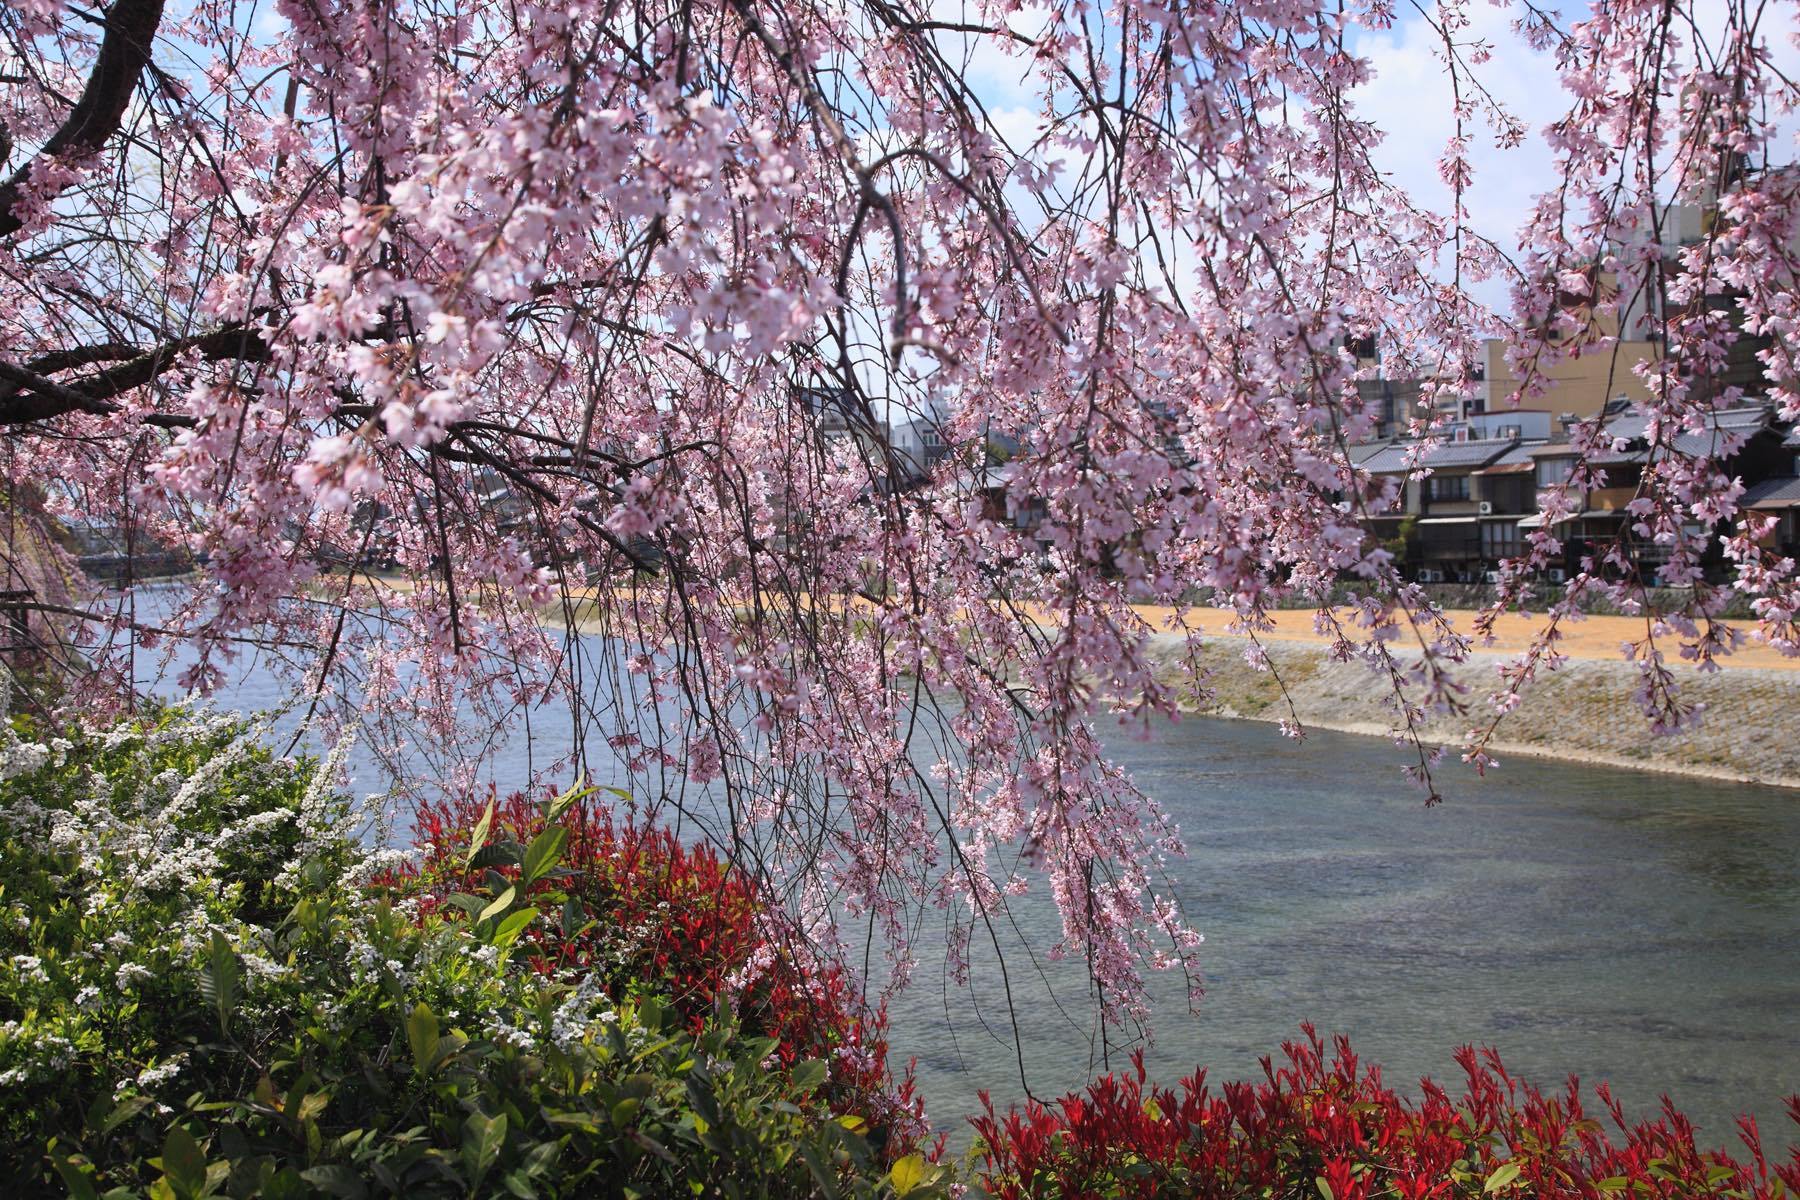 川端通りから見る鴨川の桜。朝方は陽光を受けた桜を順光で見ることとなり、ひときわ美しい。岸辺の緑も鮮やかに、まさに春爛漫。